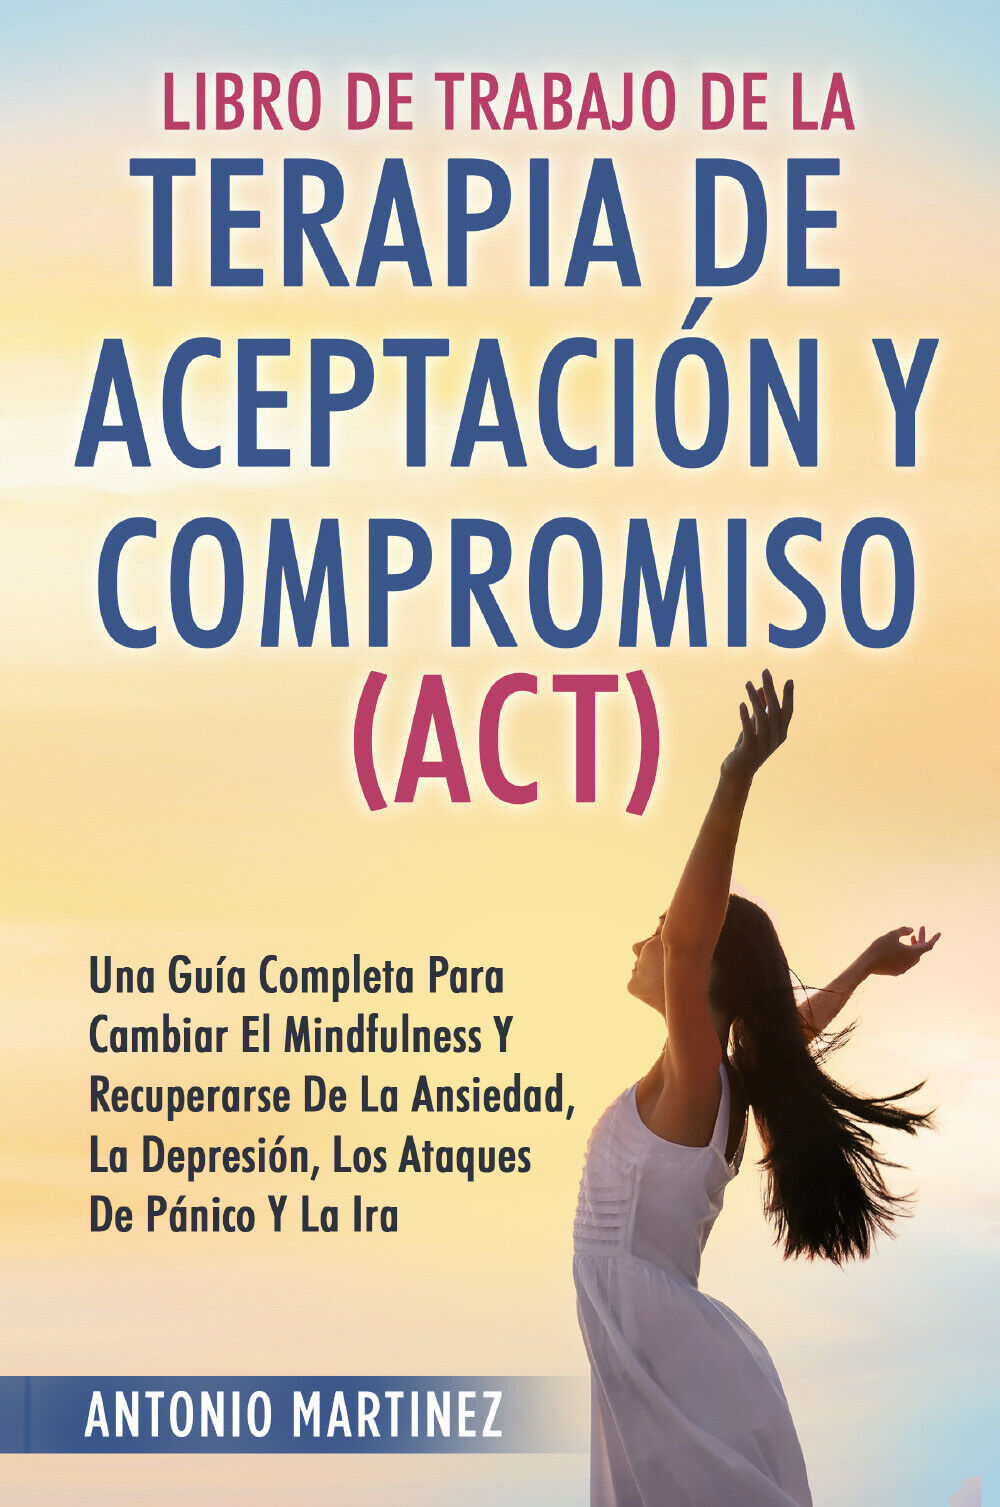 Libro de Trabajo de la terapia de aceptaciun y compromiso (ACT) di Antonio Marti libro usato